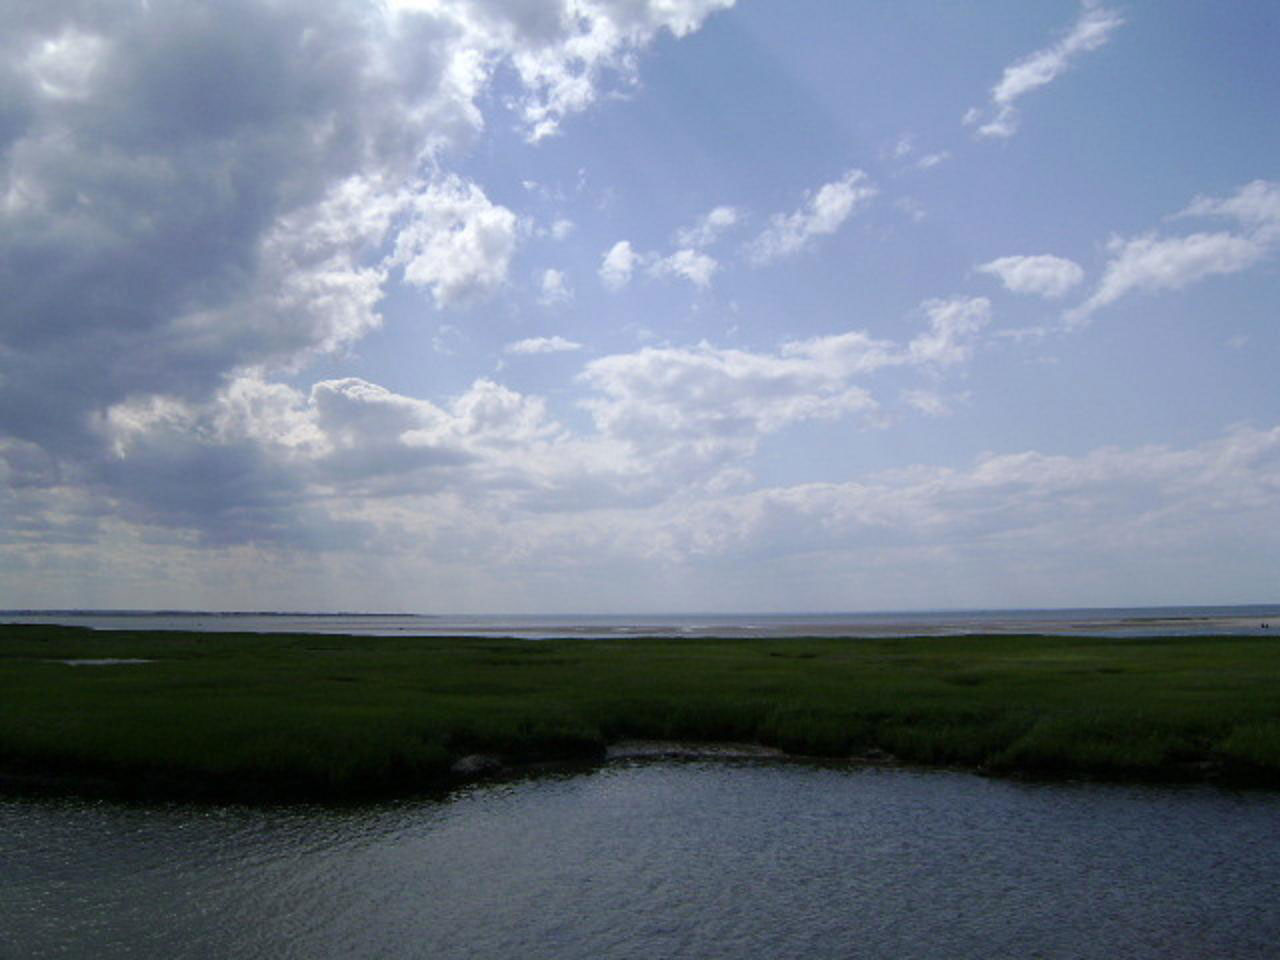 A view of a salt marsh